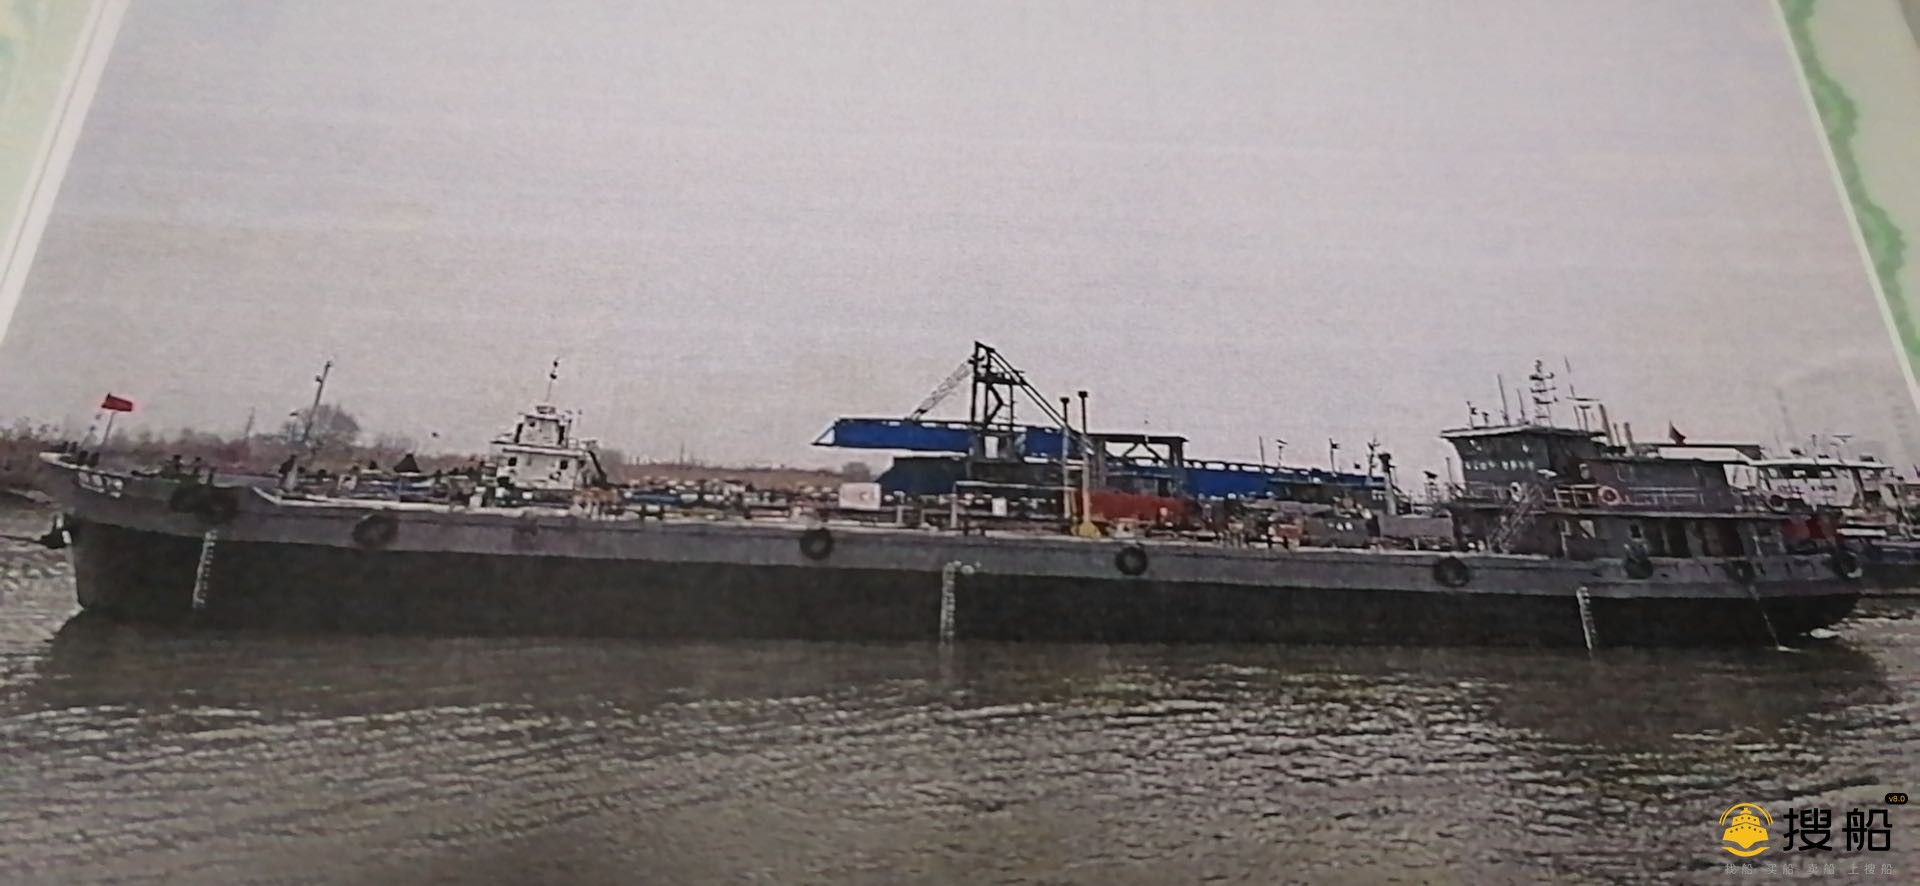 1000吨制品油油船出卖 江苏 北京市-2.jpg